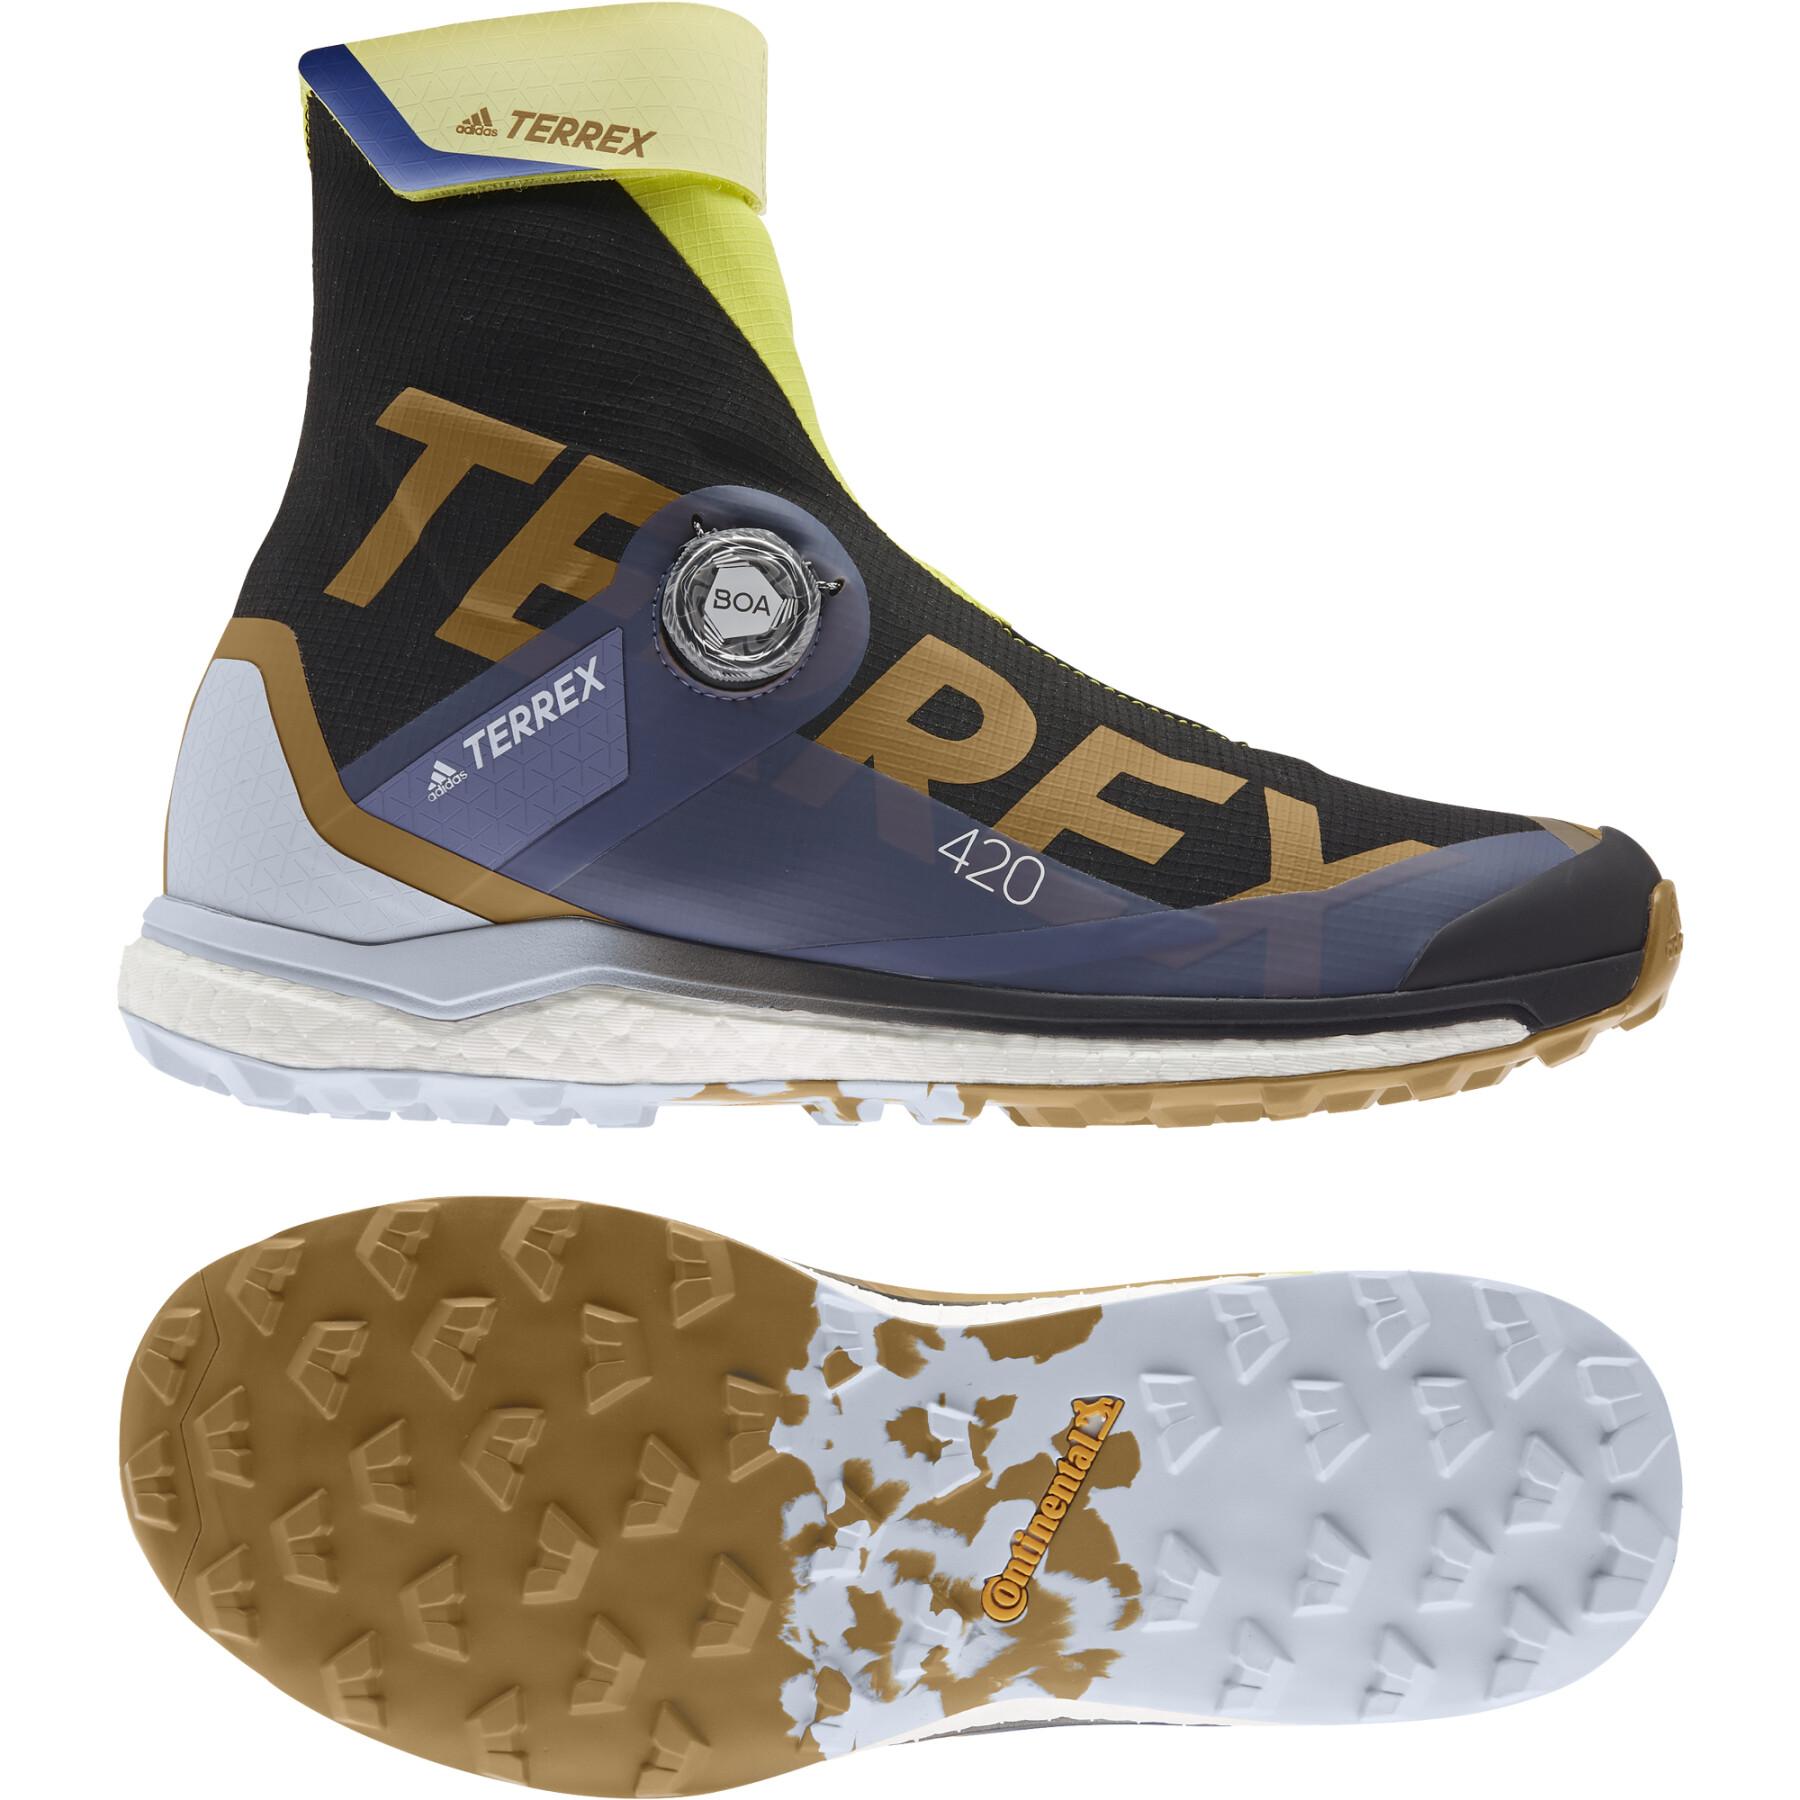 Scarpe trail adidas Terrex Agravic Tech Pro